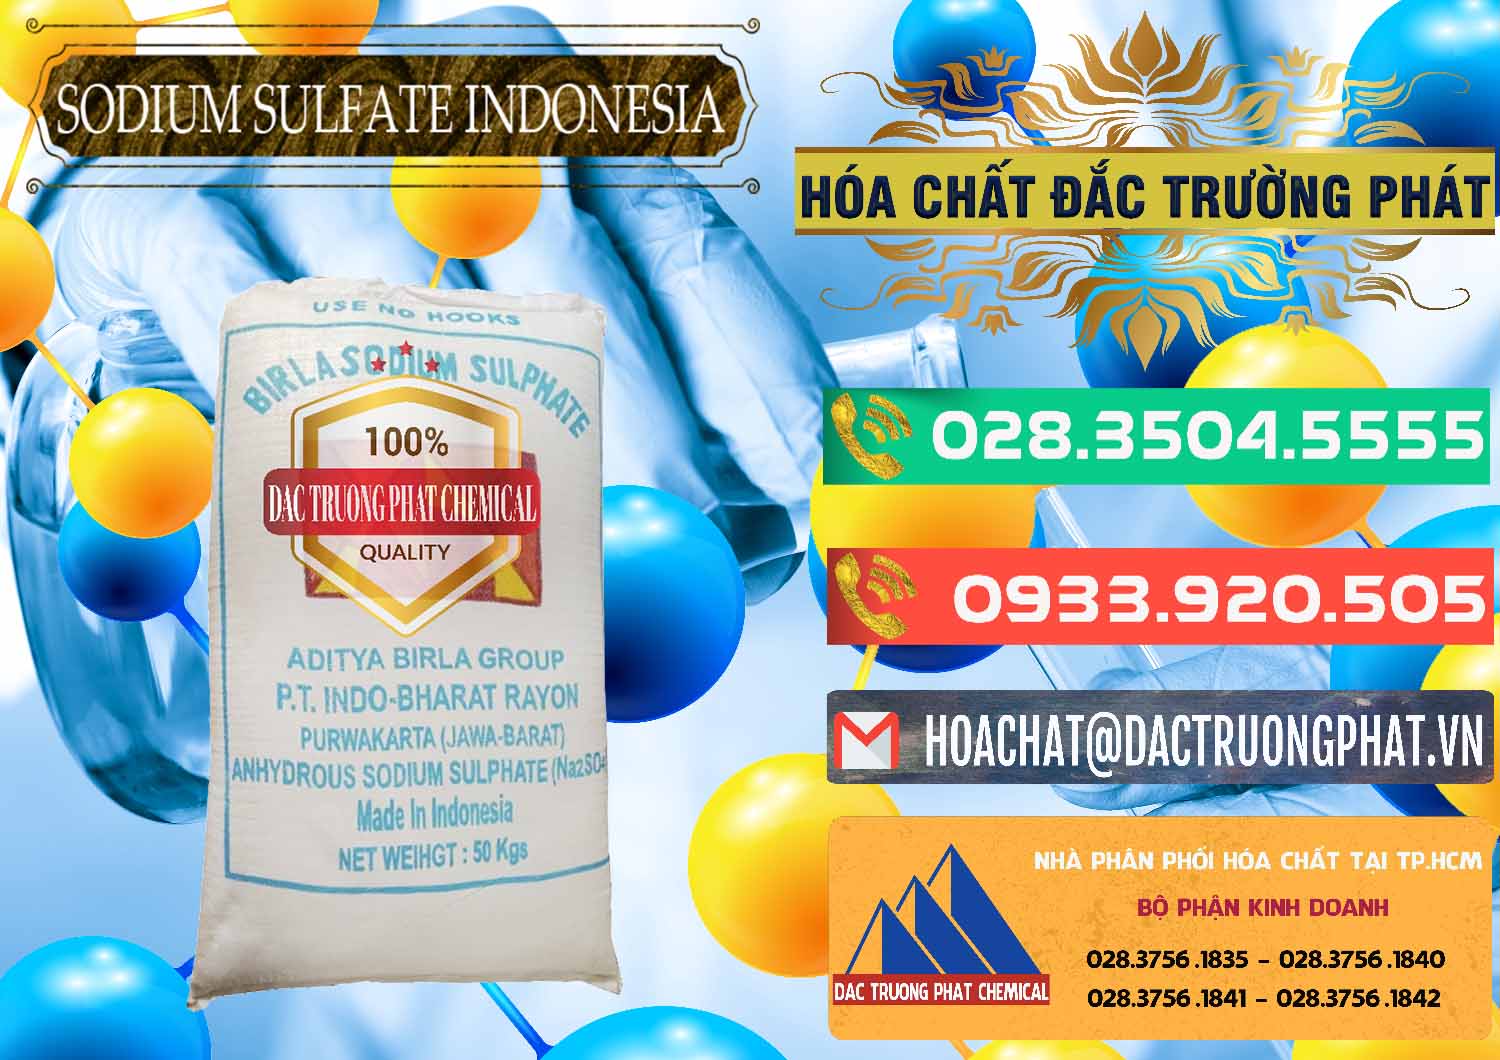 Cty chuyên cung ứng & bán Sodium Sulphate - Muối Sunfat Na2SO4 99% Indonesia - 0459 - Chuyên cung cấp và phân phối hóa chất tại TP.HCM - congtyhoachat.com.vn